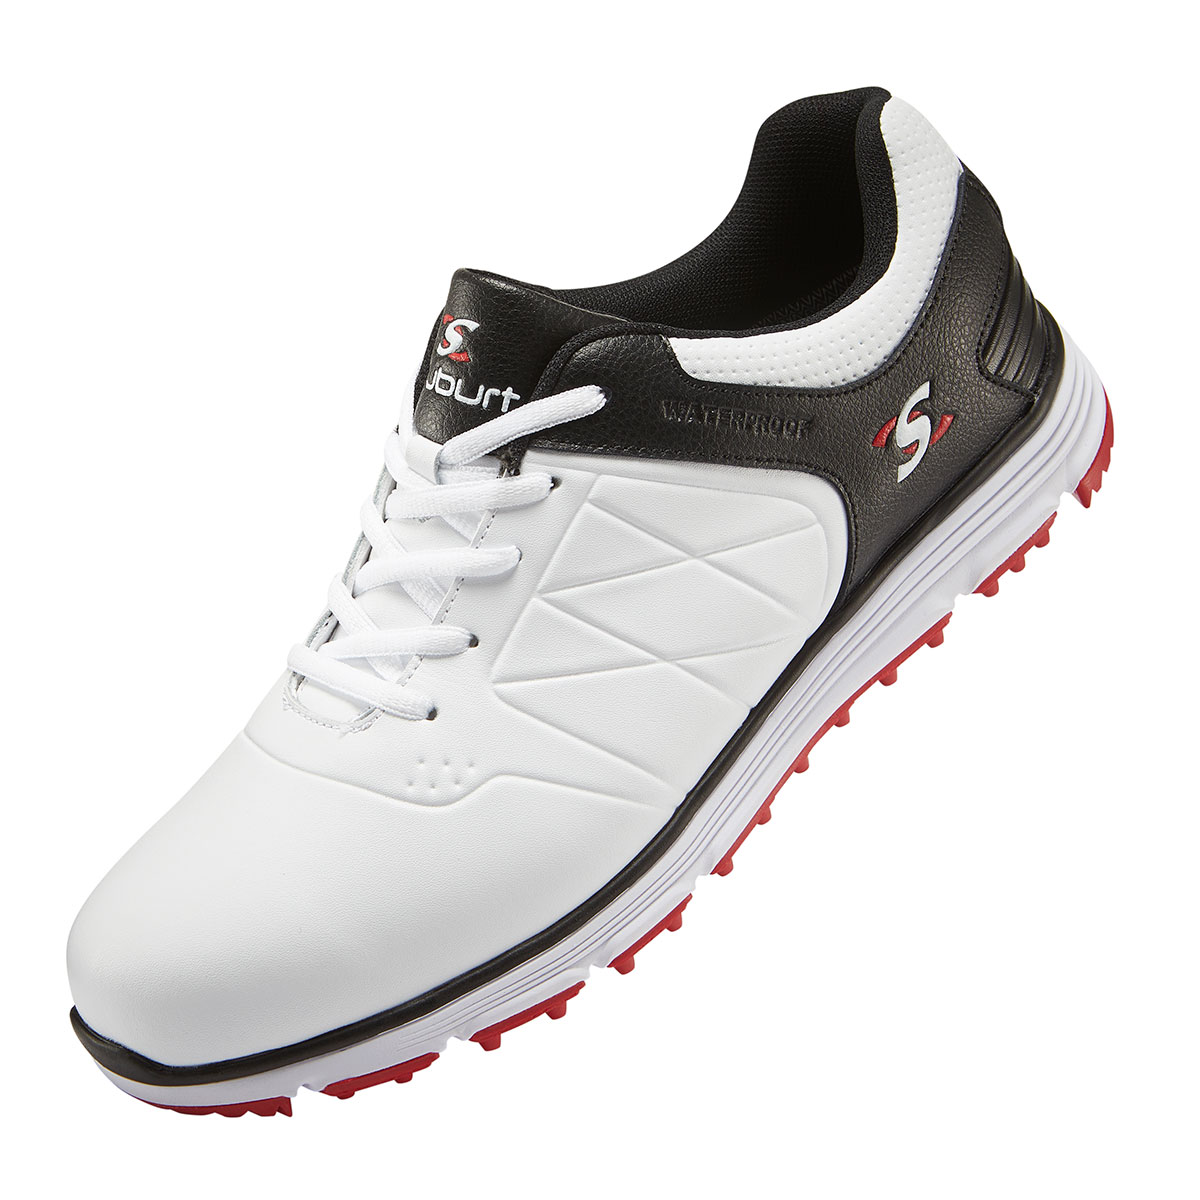 stuburt evolve golf shoes